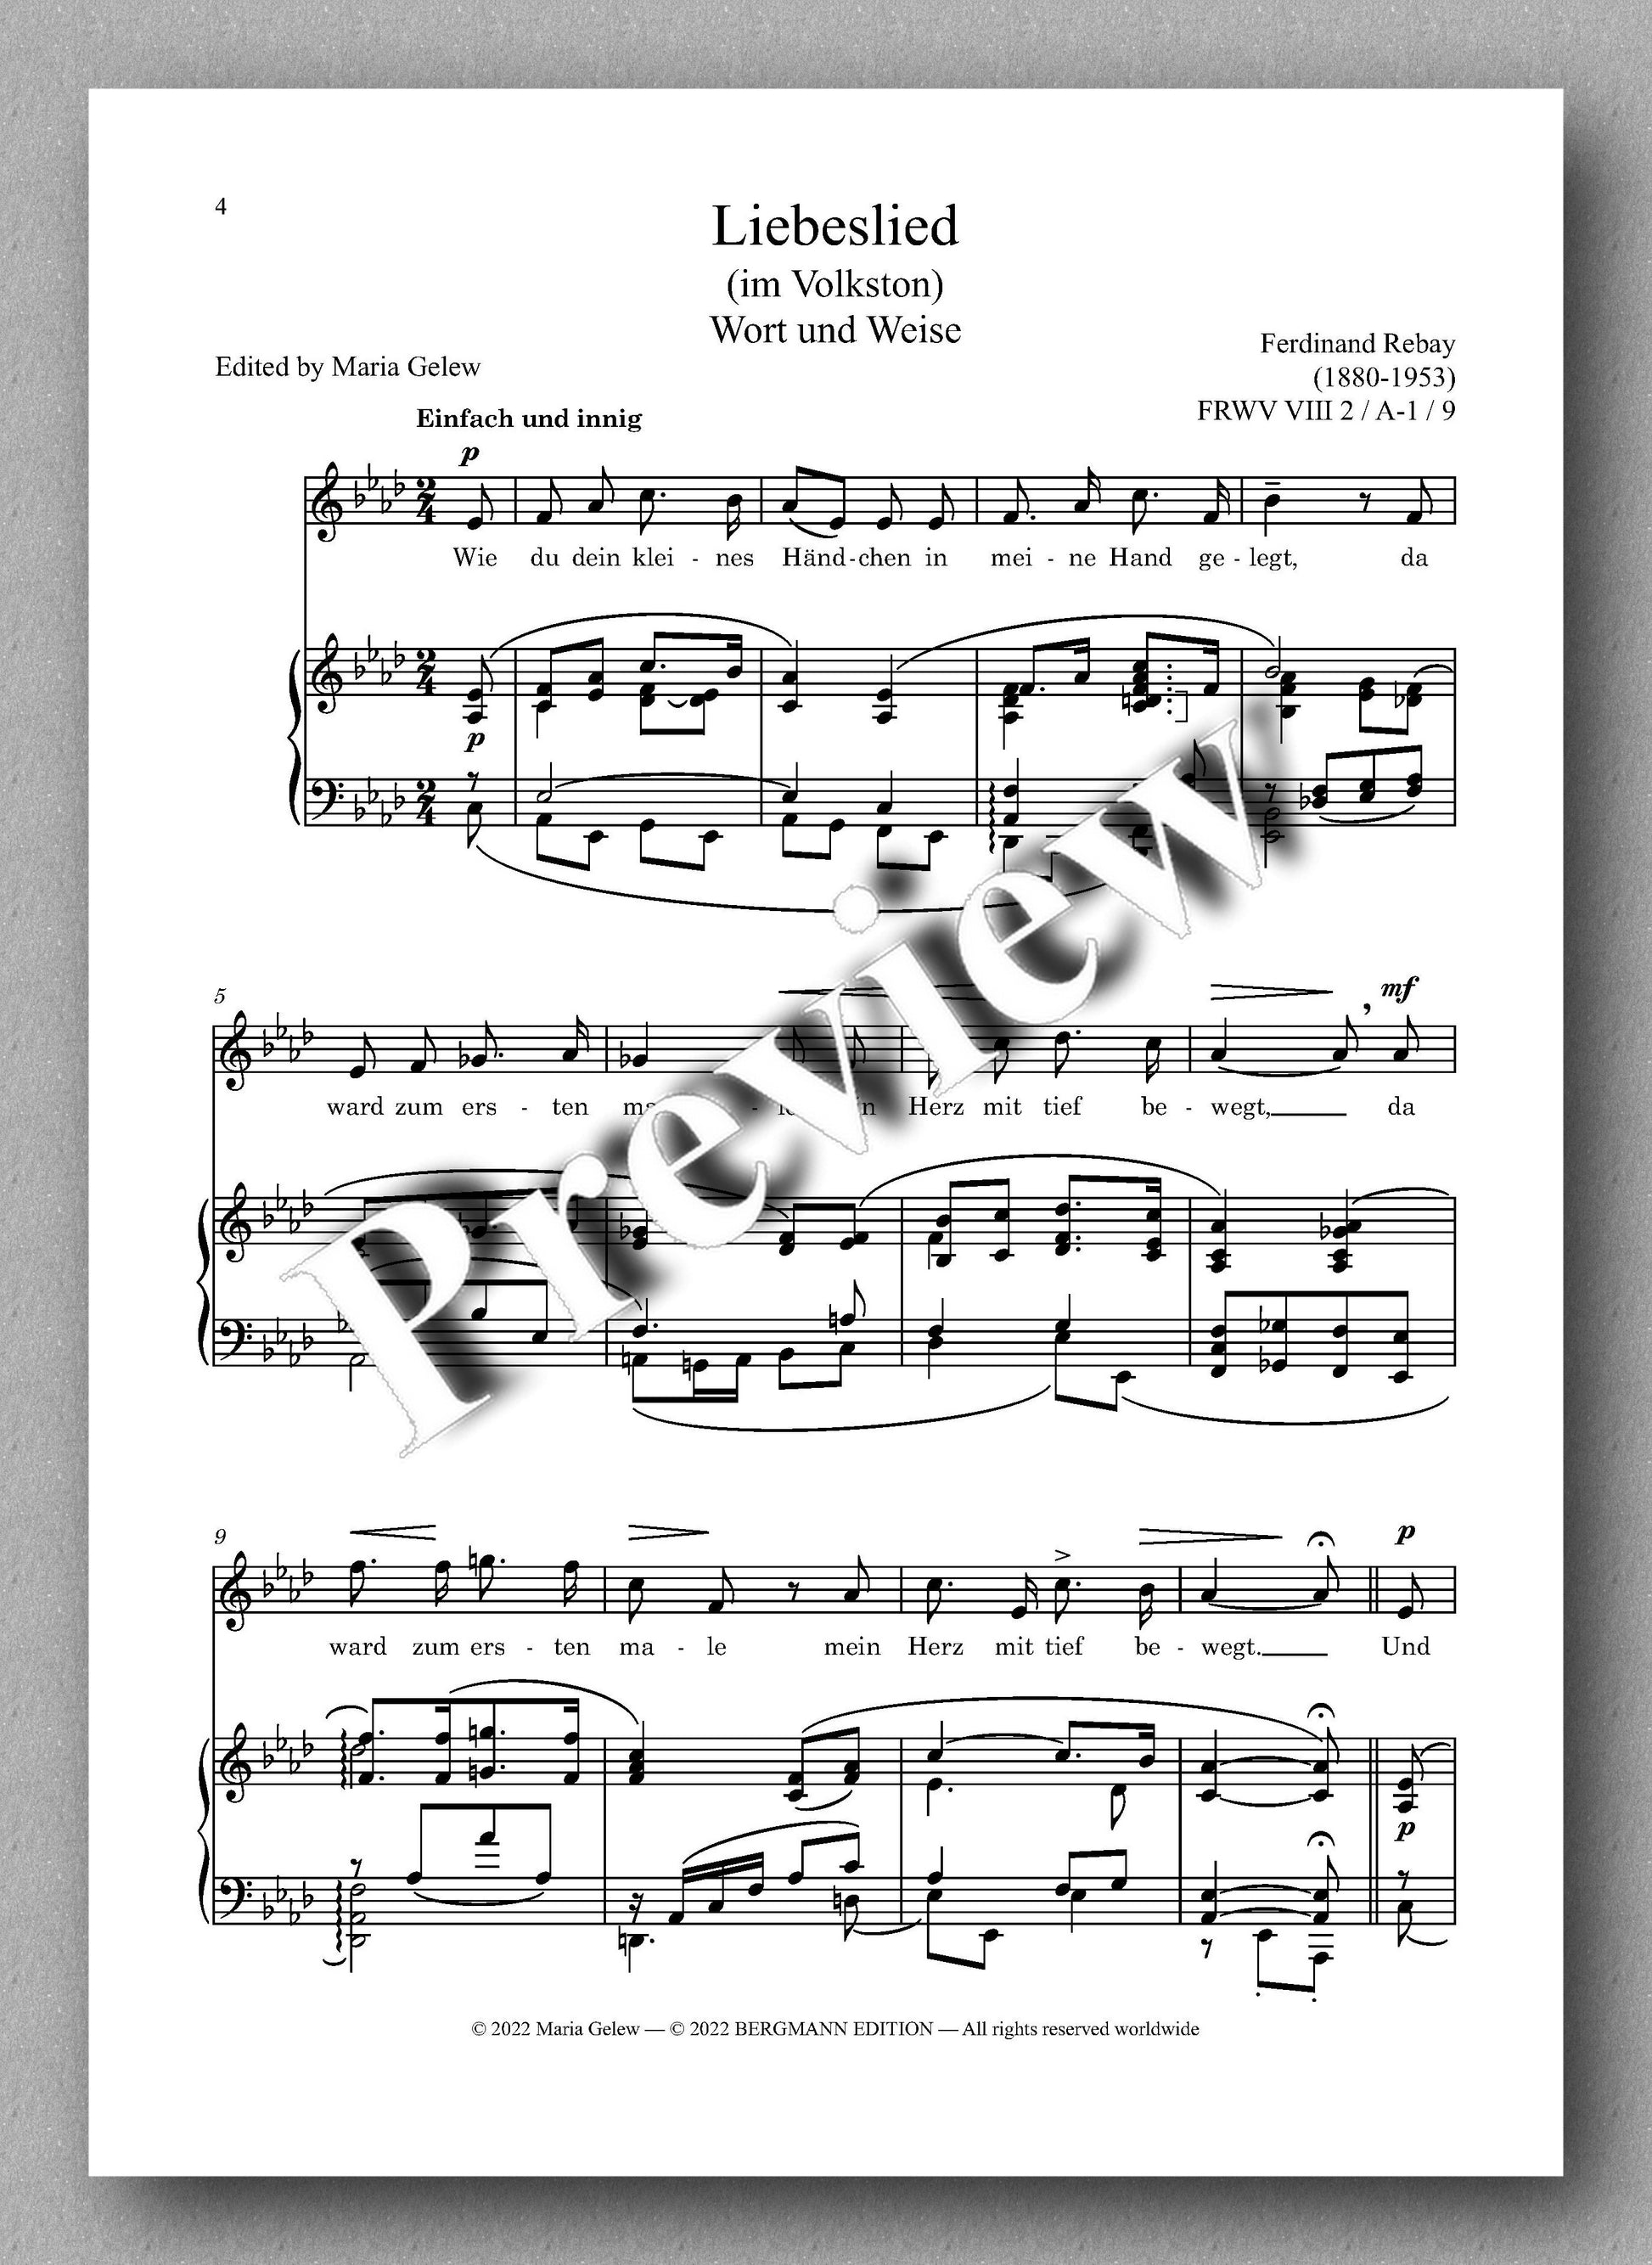 Ferdinand Rebay, Lieder nach eigenen Texten (1920) - preview of the music score 1